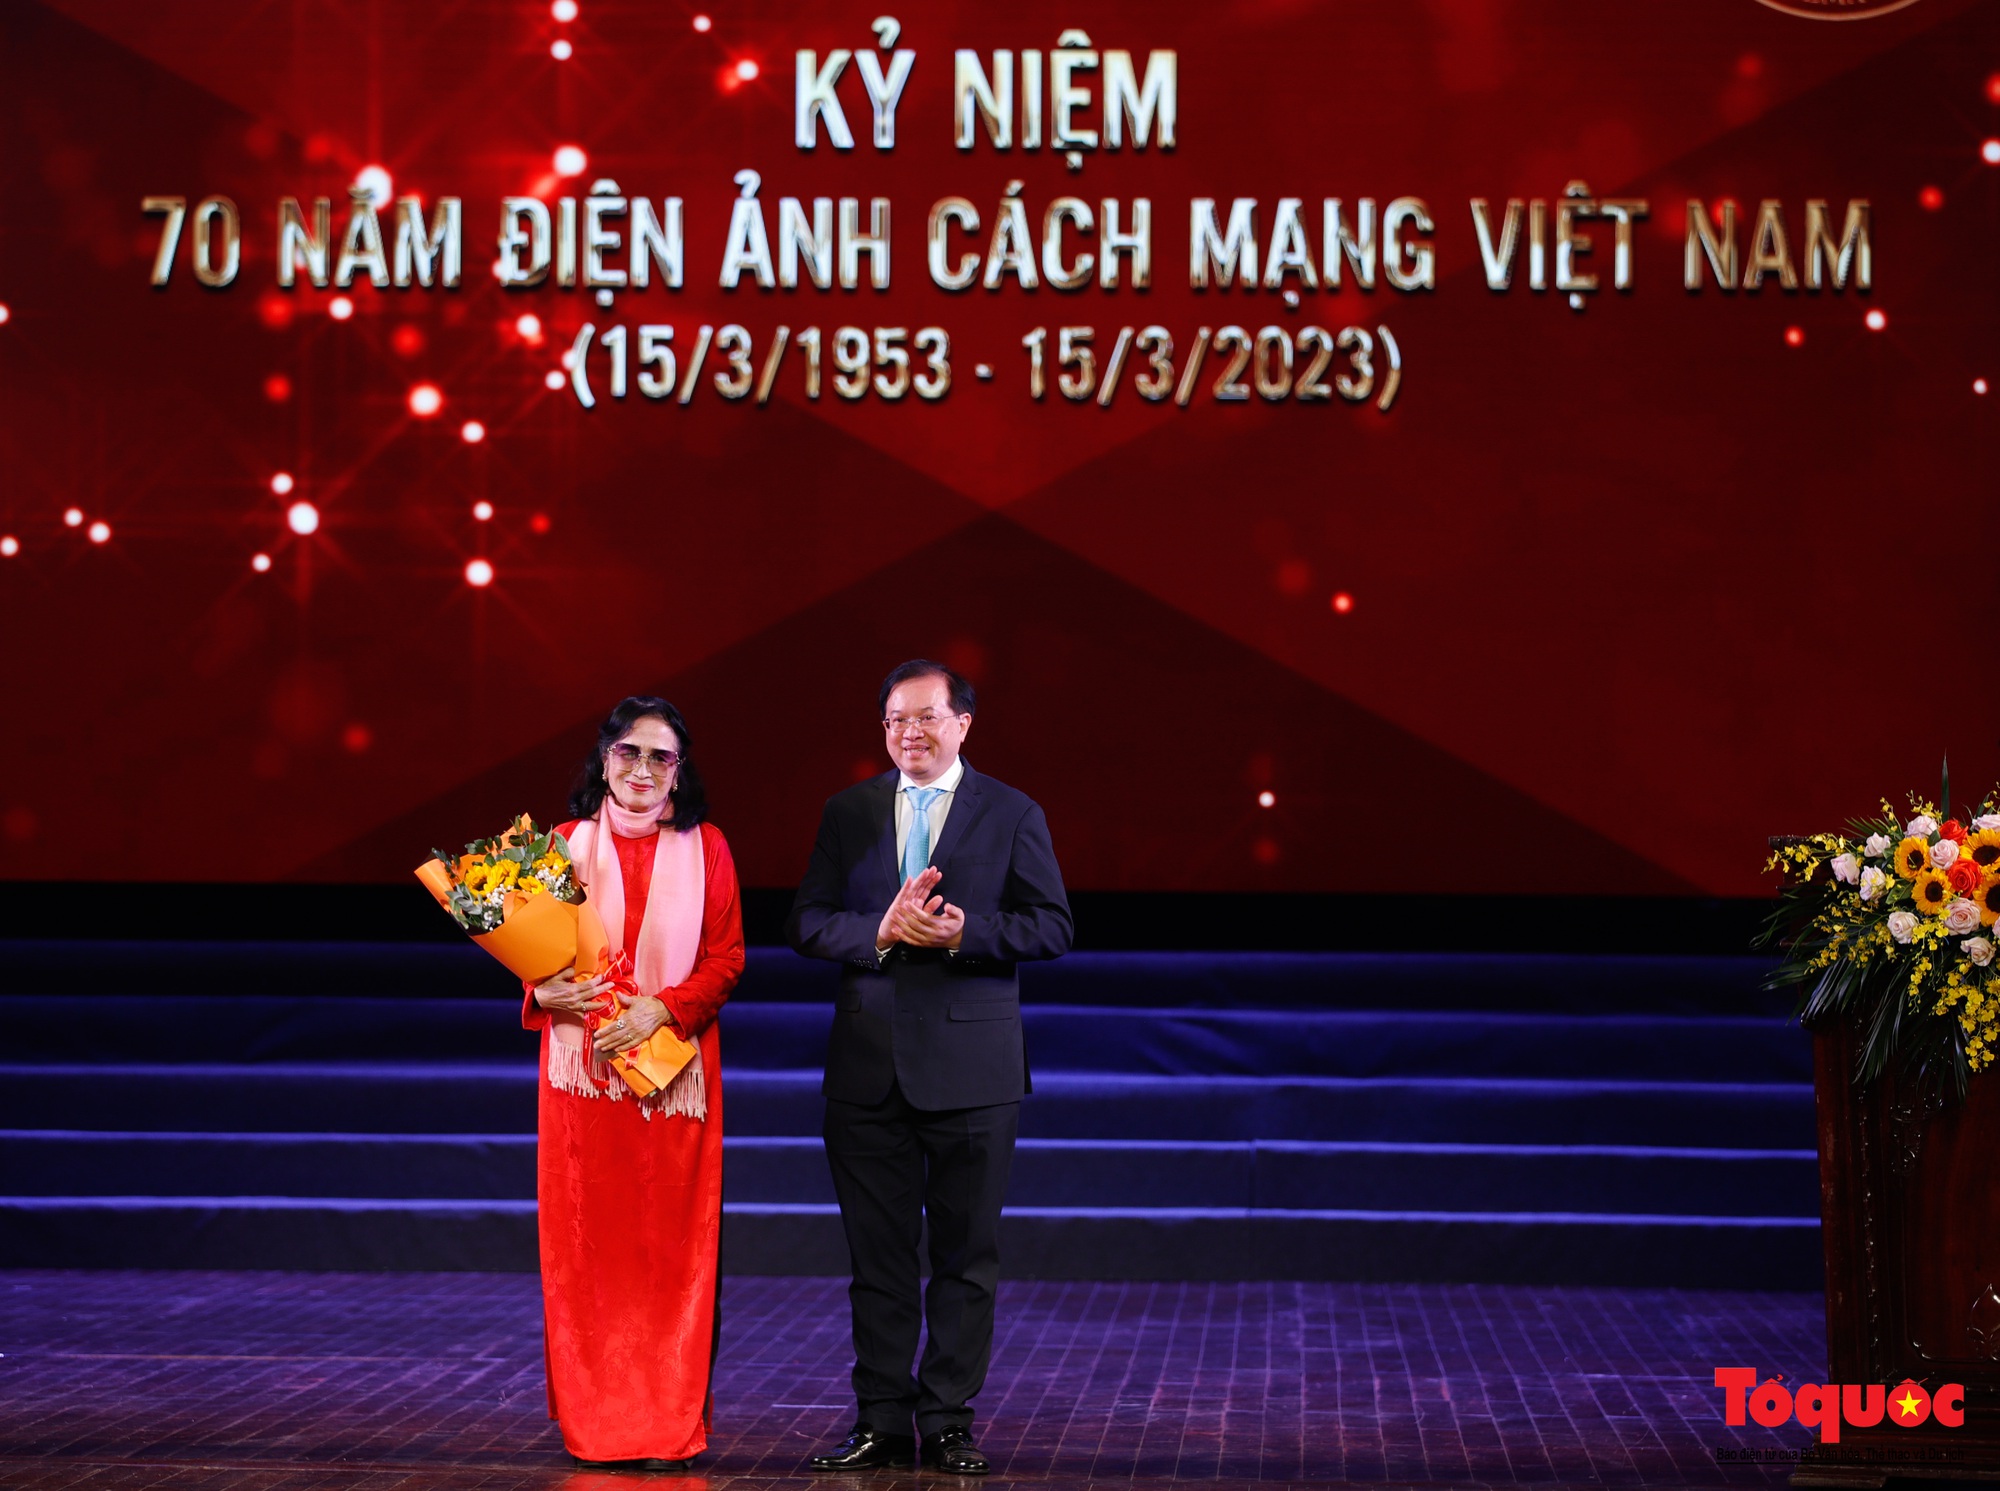 Kỷ niệm 70 năm điện ảnh cách mạng Việt Nam - Ảnh 7.